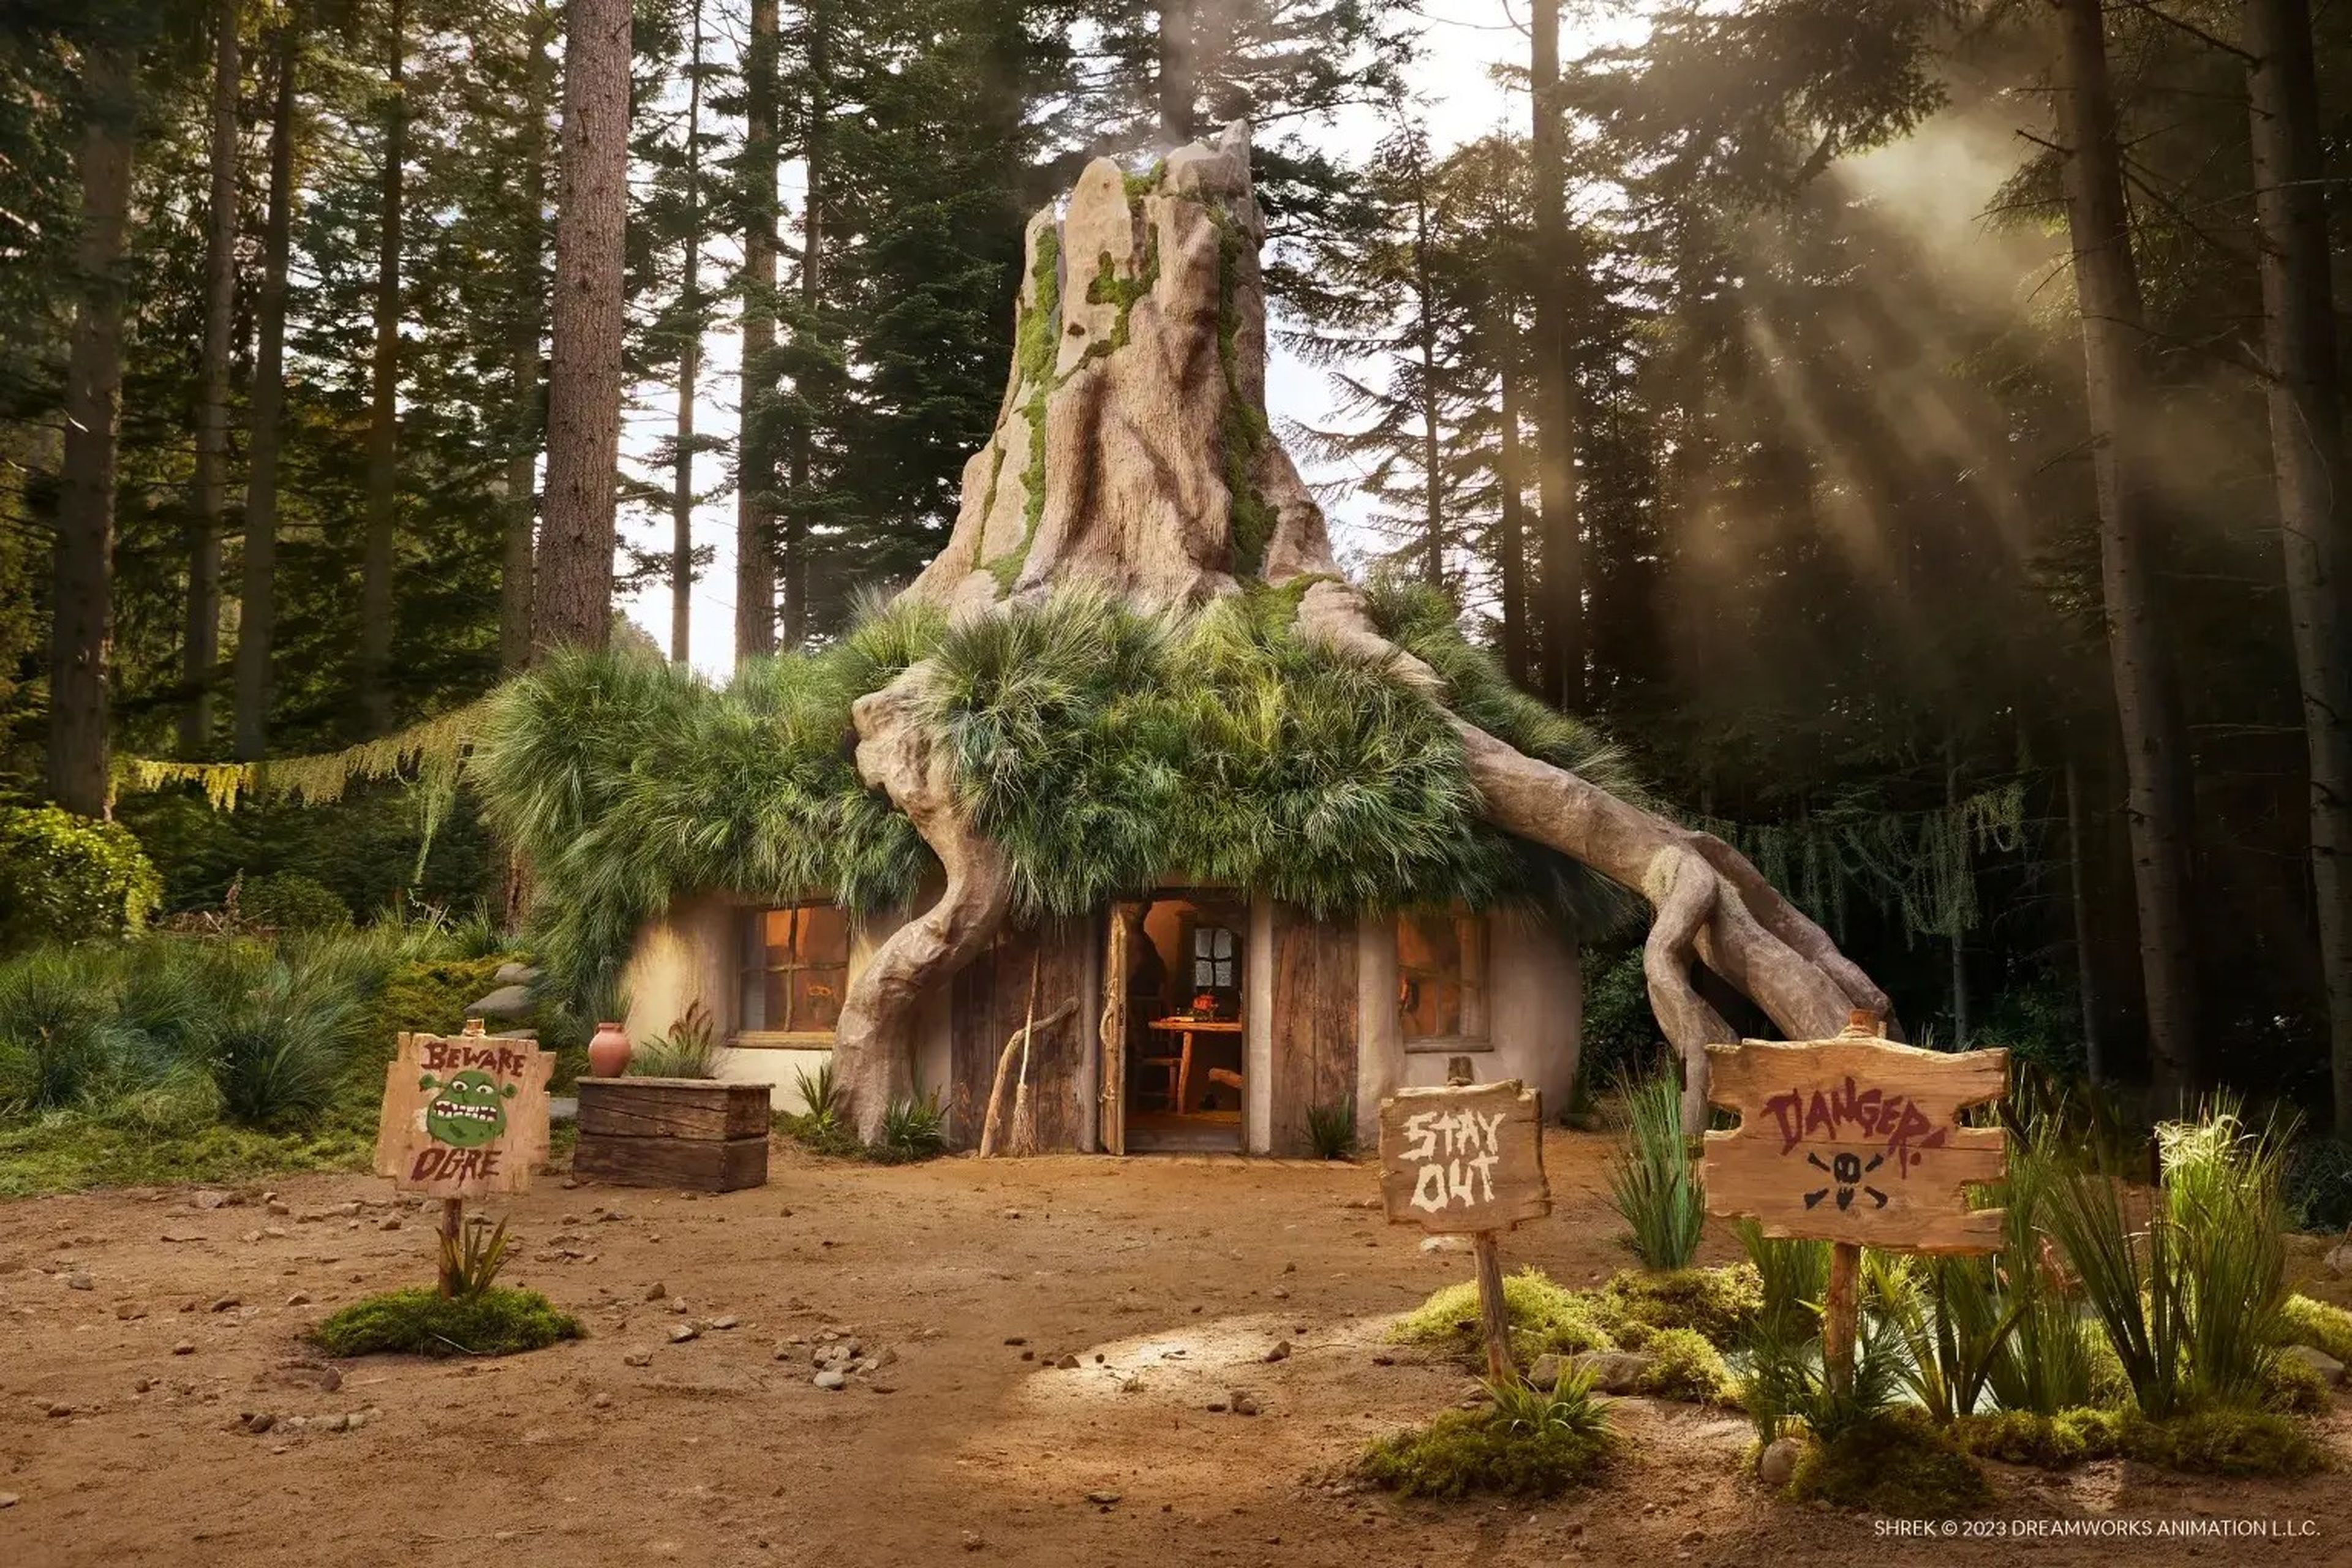 El exterior de la ciénaga de Shrek es idéntico al de la película.